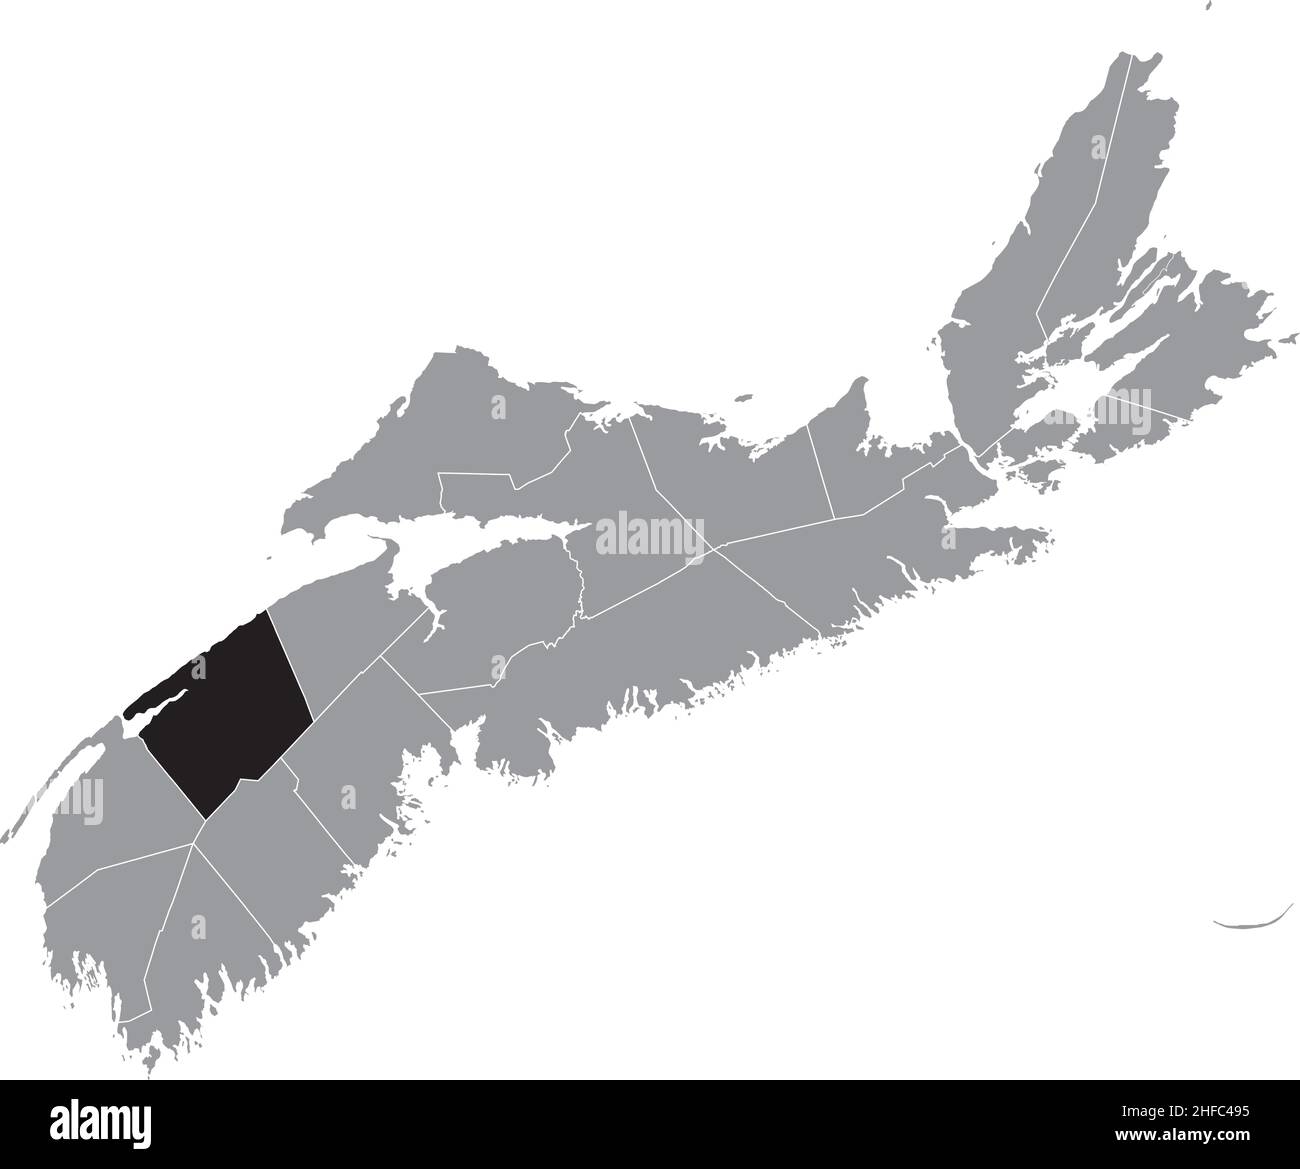 Noir plat vierge carte de localisation mise en évidence du COMTÉ D'ANNAPOLIS carte administrative grise des comtés de la province canadienne de la Nouvelle-Écosse, Cana Illustration de Vecteur